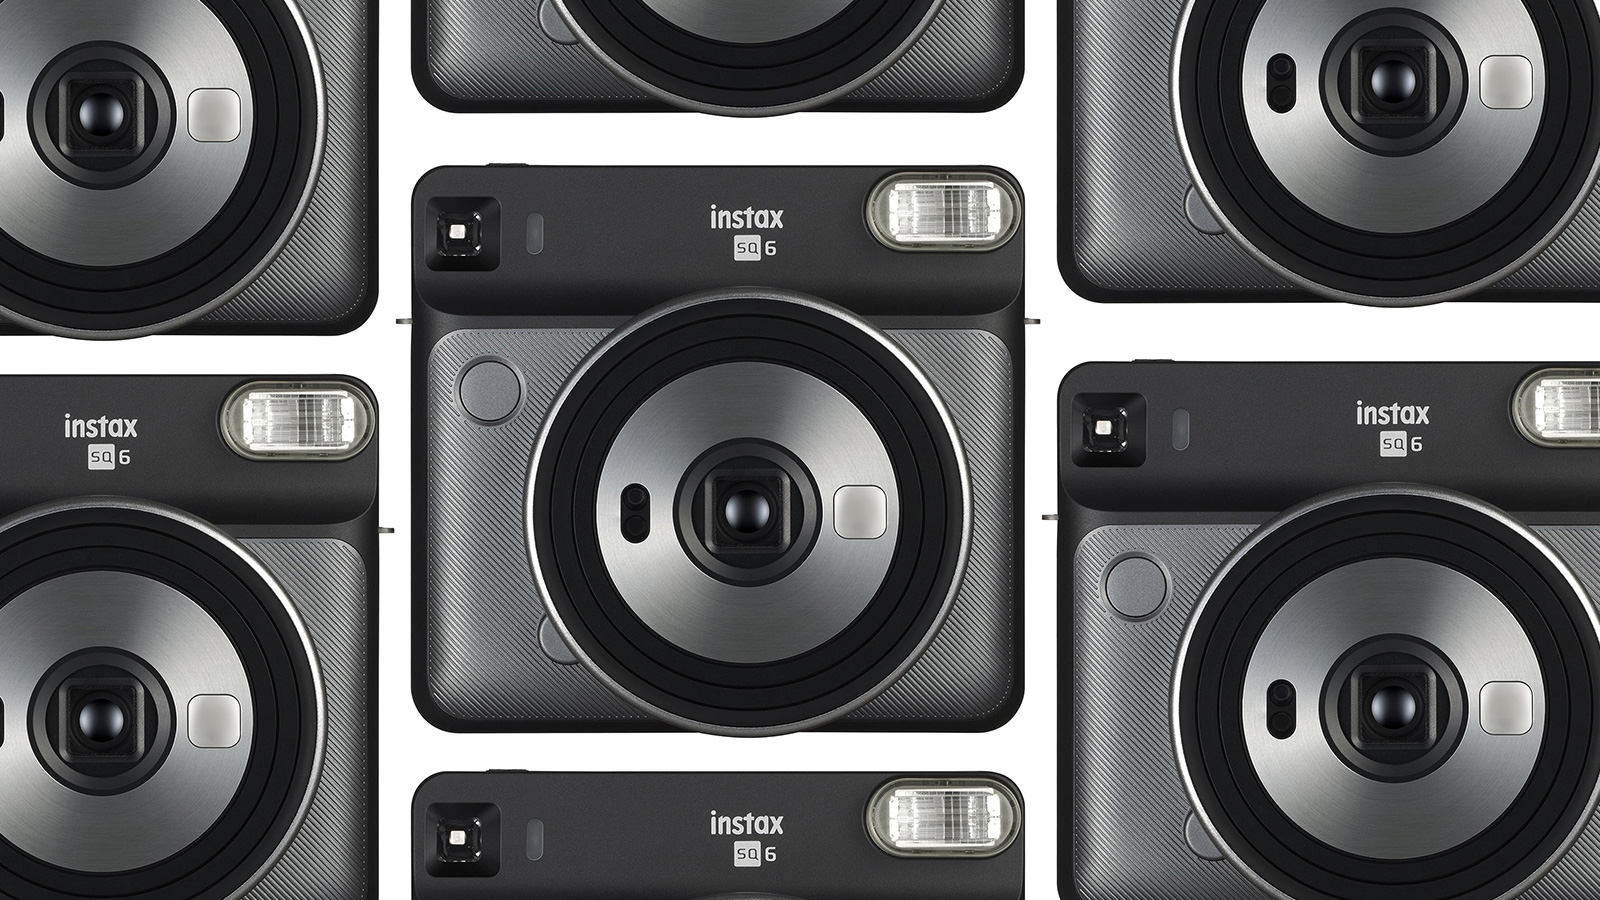 Fujifilm instax SQUARE SQ6 Instant Film Camera - Graphite Grey for